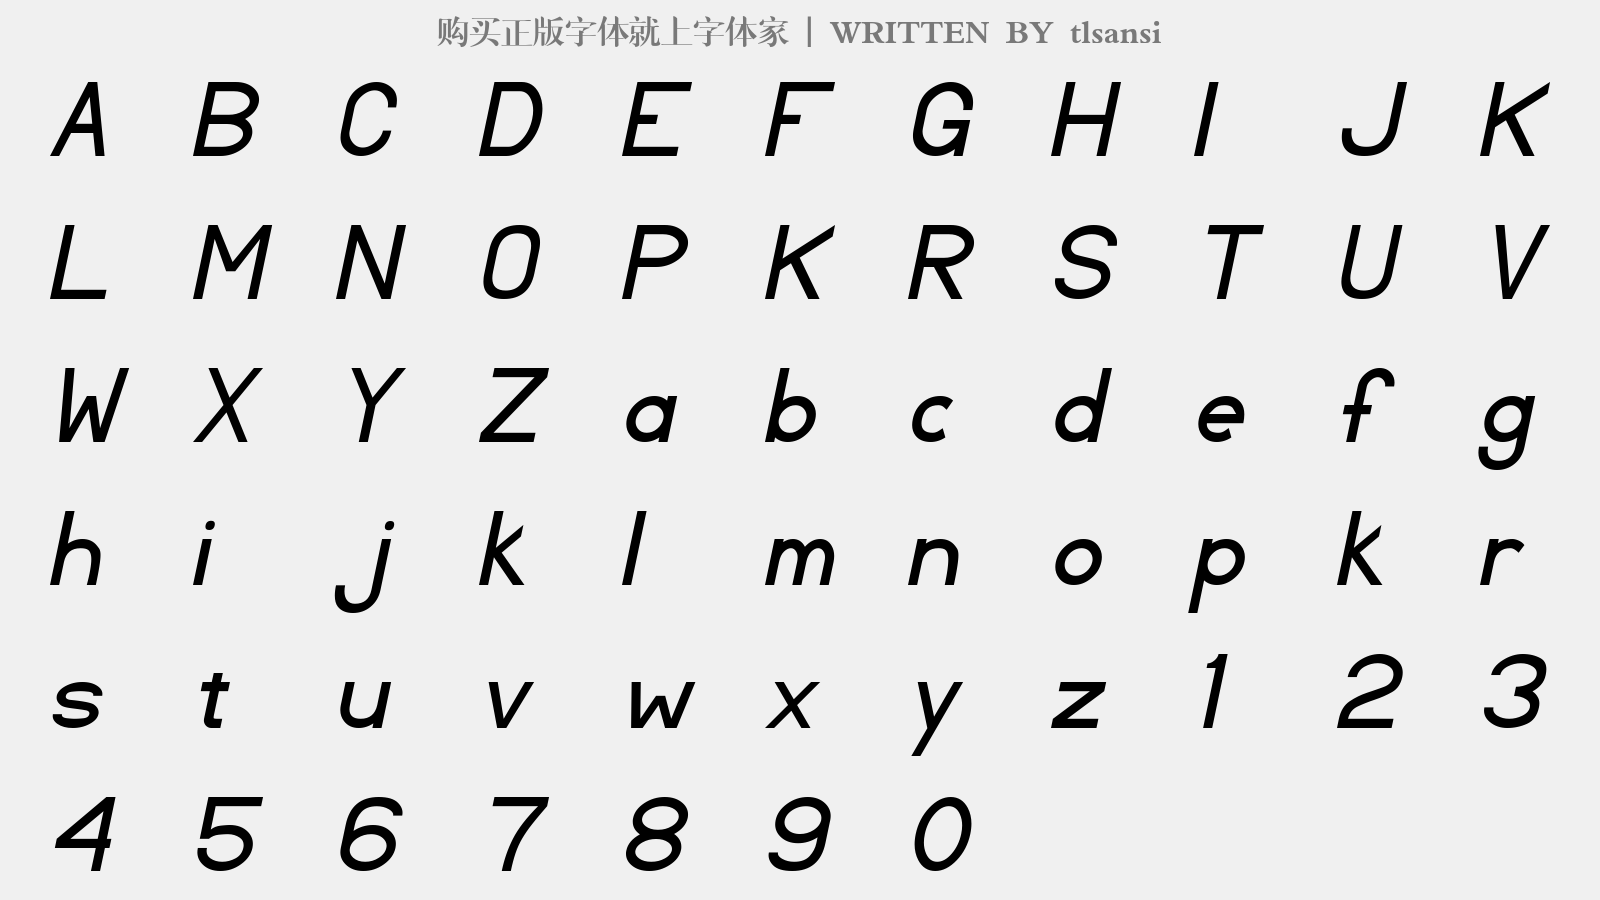 tlsansi - 大写字母/小写字母/数字